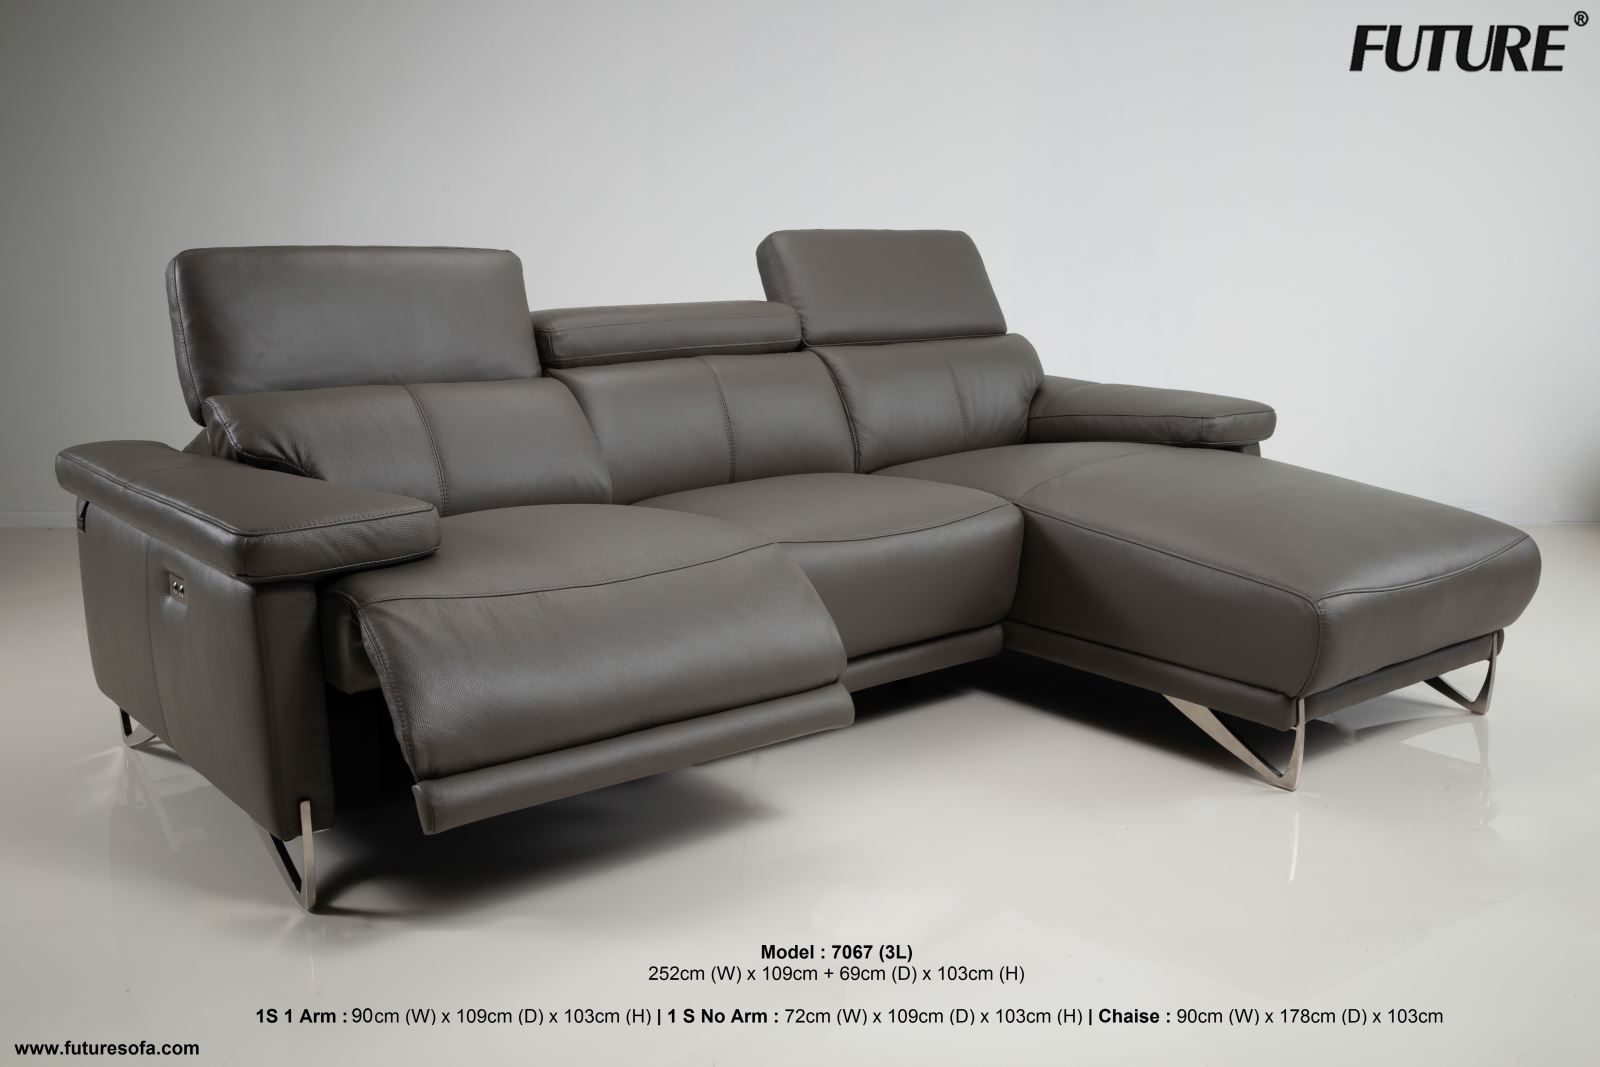 Sofa da bò chữ L Future Model 7067 3L giảm tới 40% saigonsofa.com